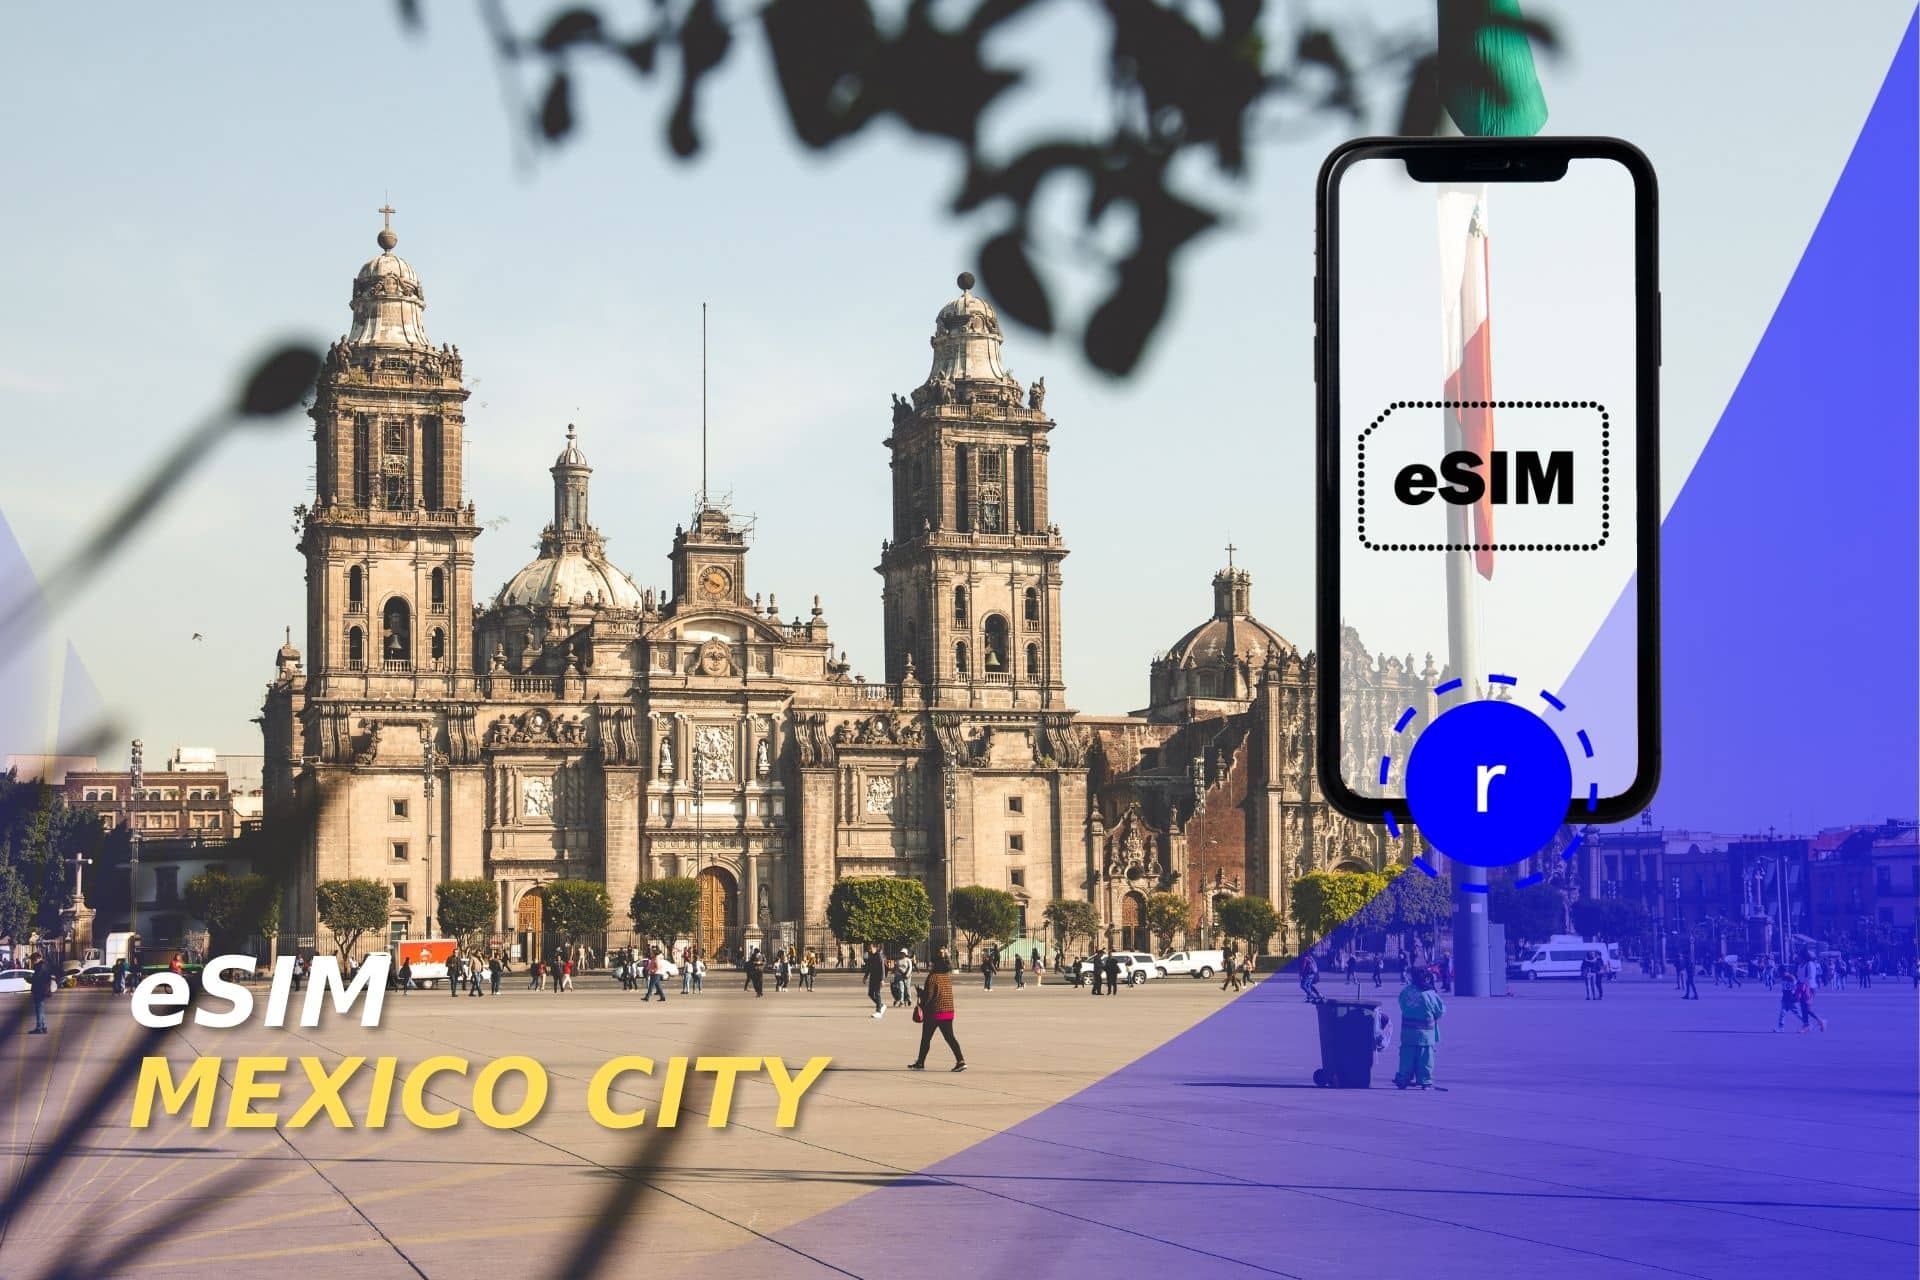 esim for mexico city